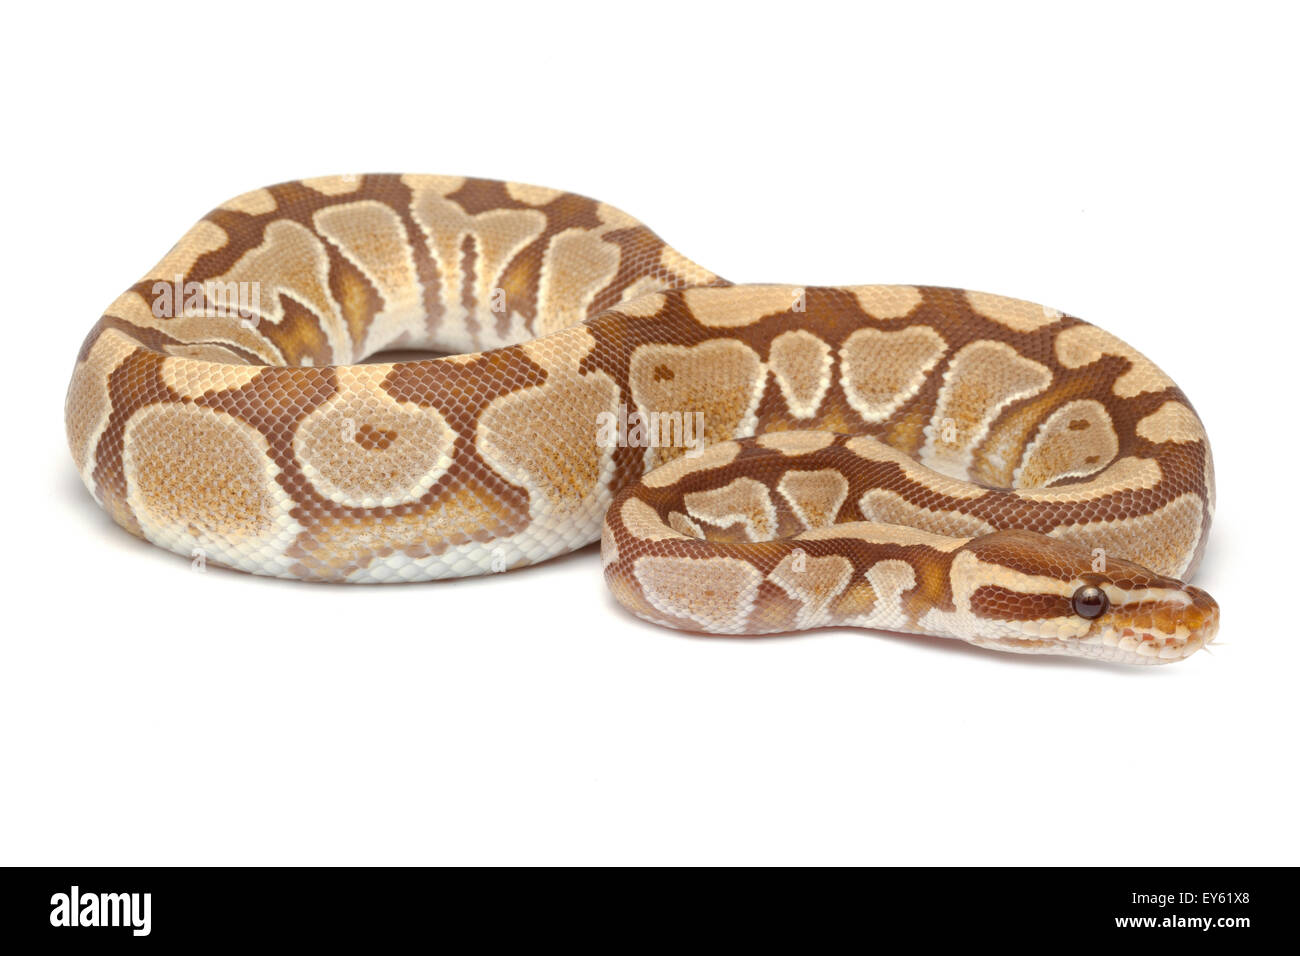 King Python 'caramel albino' on white background Stock Photo